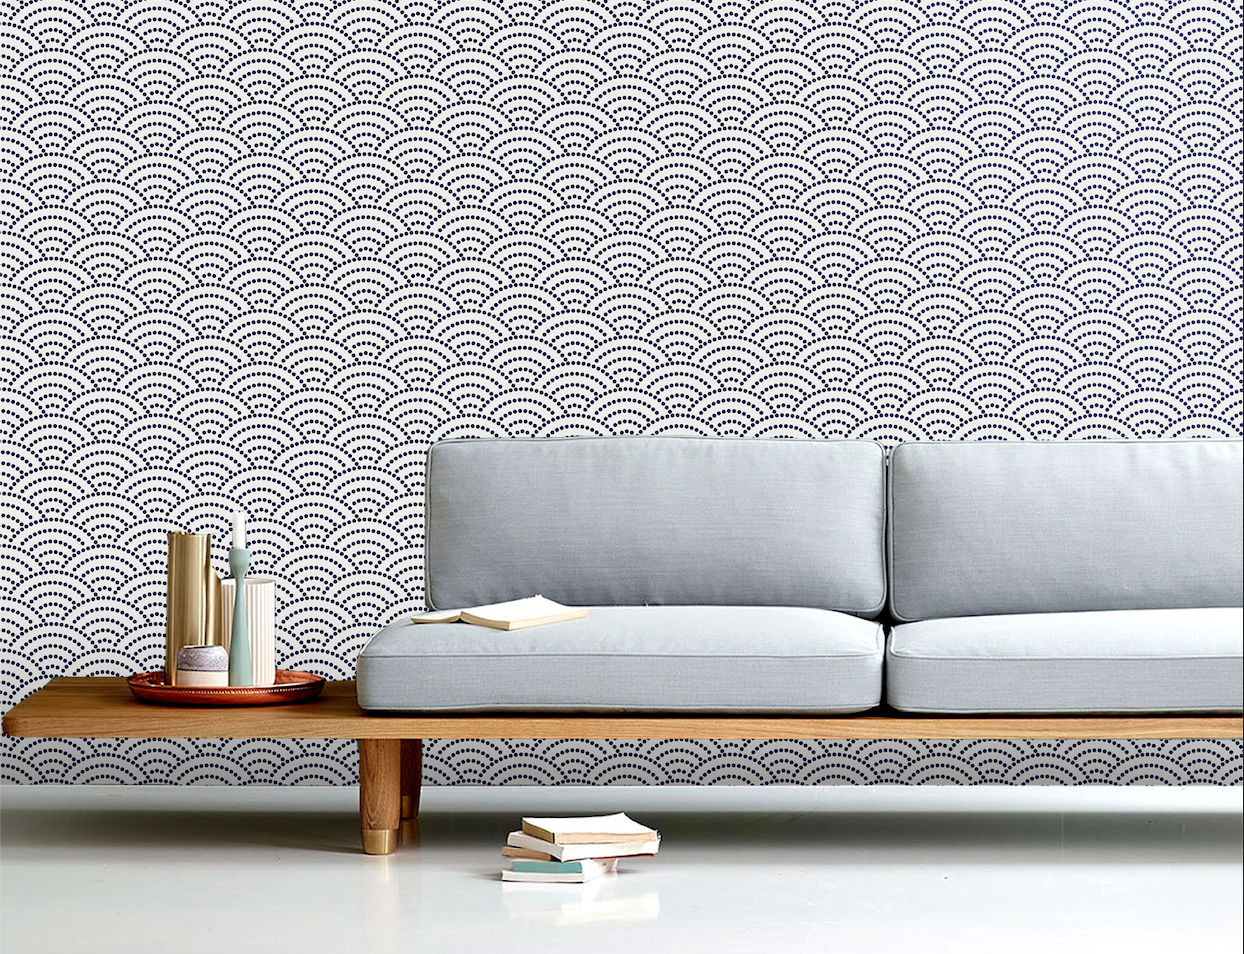 Japanese Inspired 4K Wallpaper